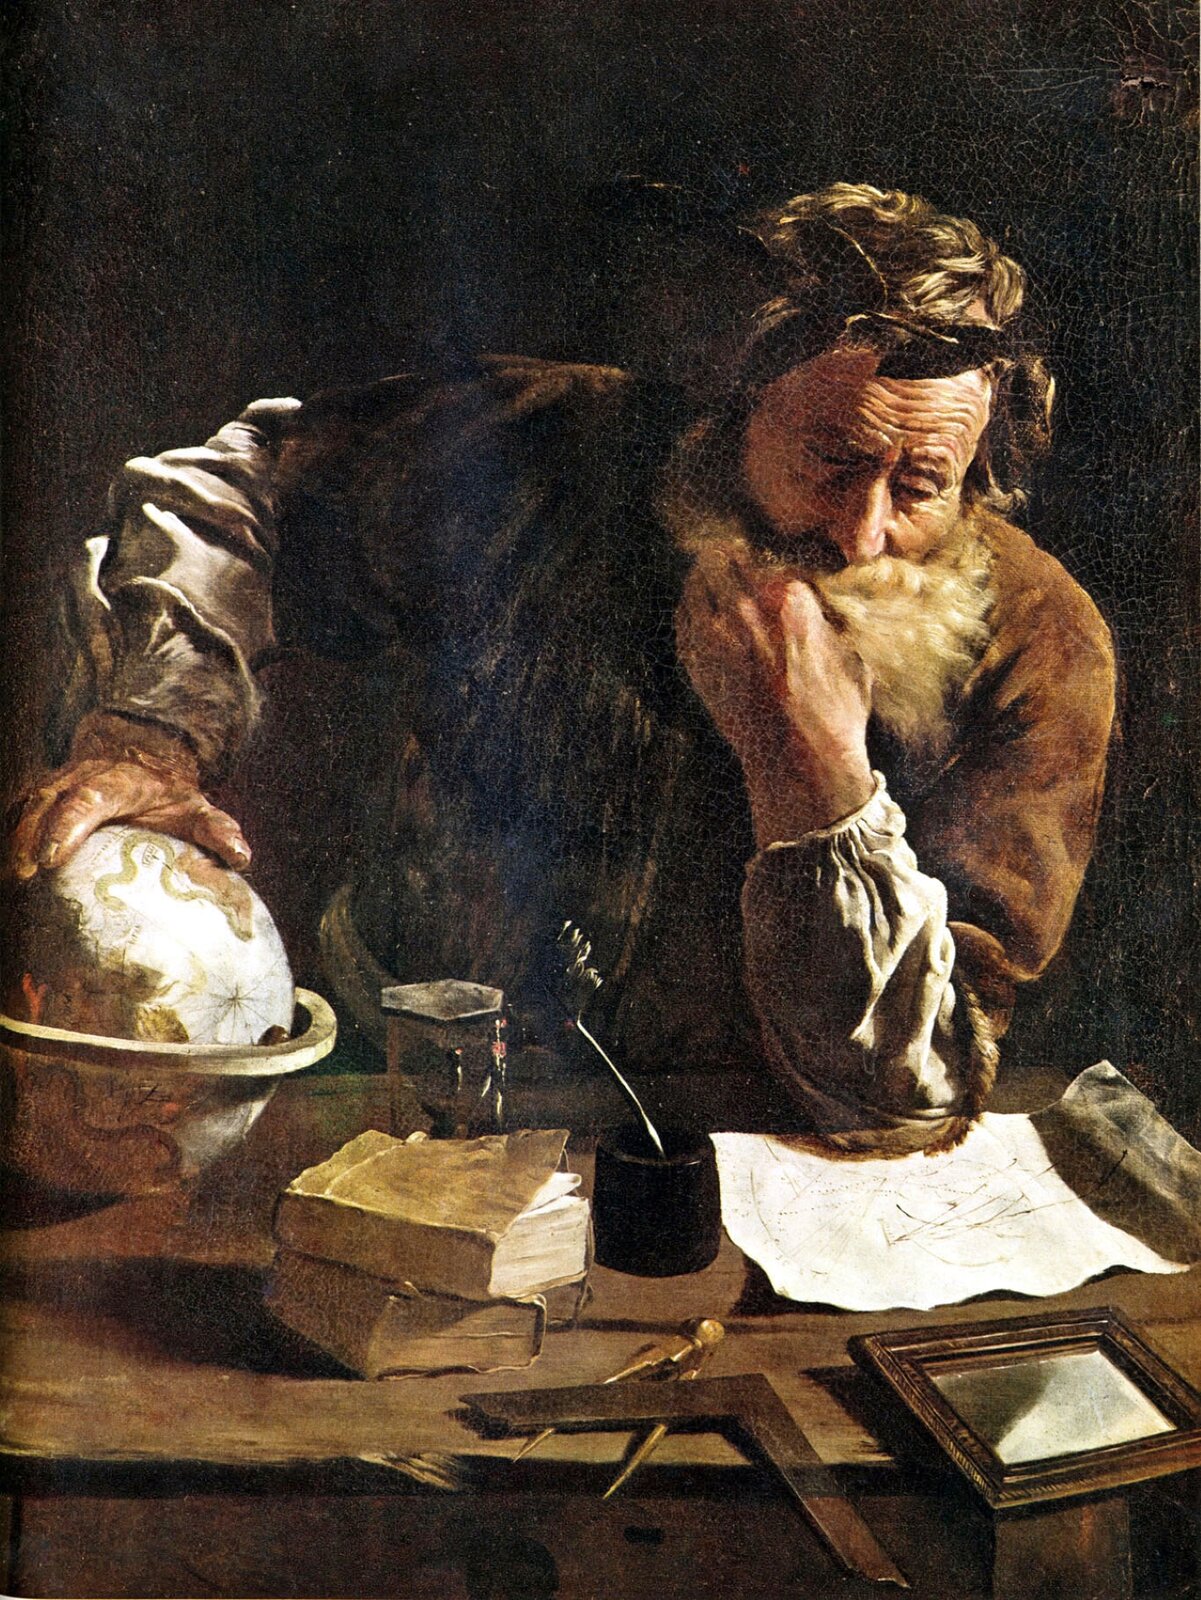 Rys. 1. Ilustracja poglądowa przedstawia rycinę z wyobrażeniem Archimedesa podczas pracy naukowej. Starszy brodaty mężczyzna widoczny na rycinie pochyla się nad notatkami leżącymi na stole. Lewą ręką dotyka brody, prawą wspiera na globusie. Na stole znajdują się również książki, klepsydra, cyrkiel i inne przyrządy matematyczne, zwierciadło i pióro zanurzone w naczyniu z atramentem. Mężczyzna wyraźnie pochłonięty jest myślami o swojej pracy. 